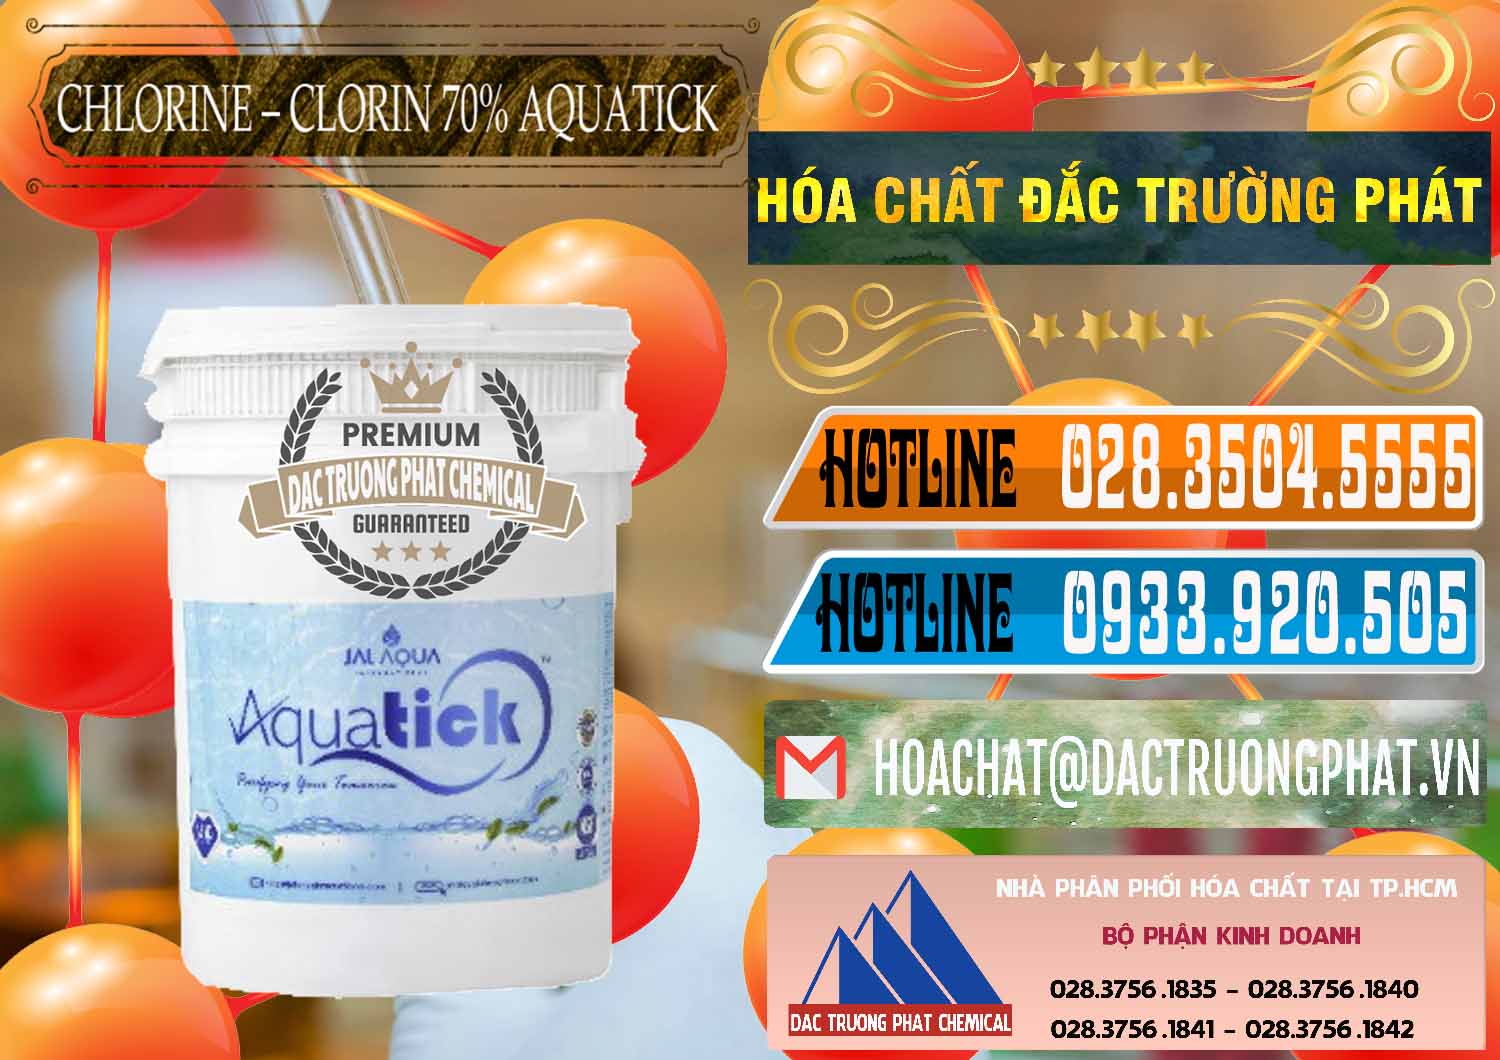 Đơn vị chuyên bán & phân phối Chlorine – Clorin 70% Aquatick Thùng Cao Jal Aqua Ấn Độ India - 0237 - Cty chuyên phân phối ( bán ) hóa chất tại TP.HCM - stmp.net